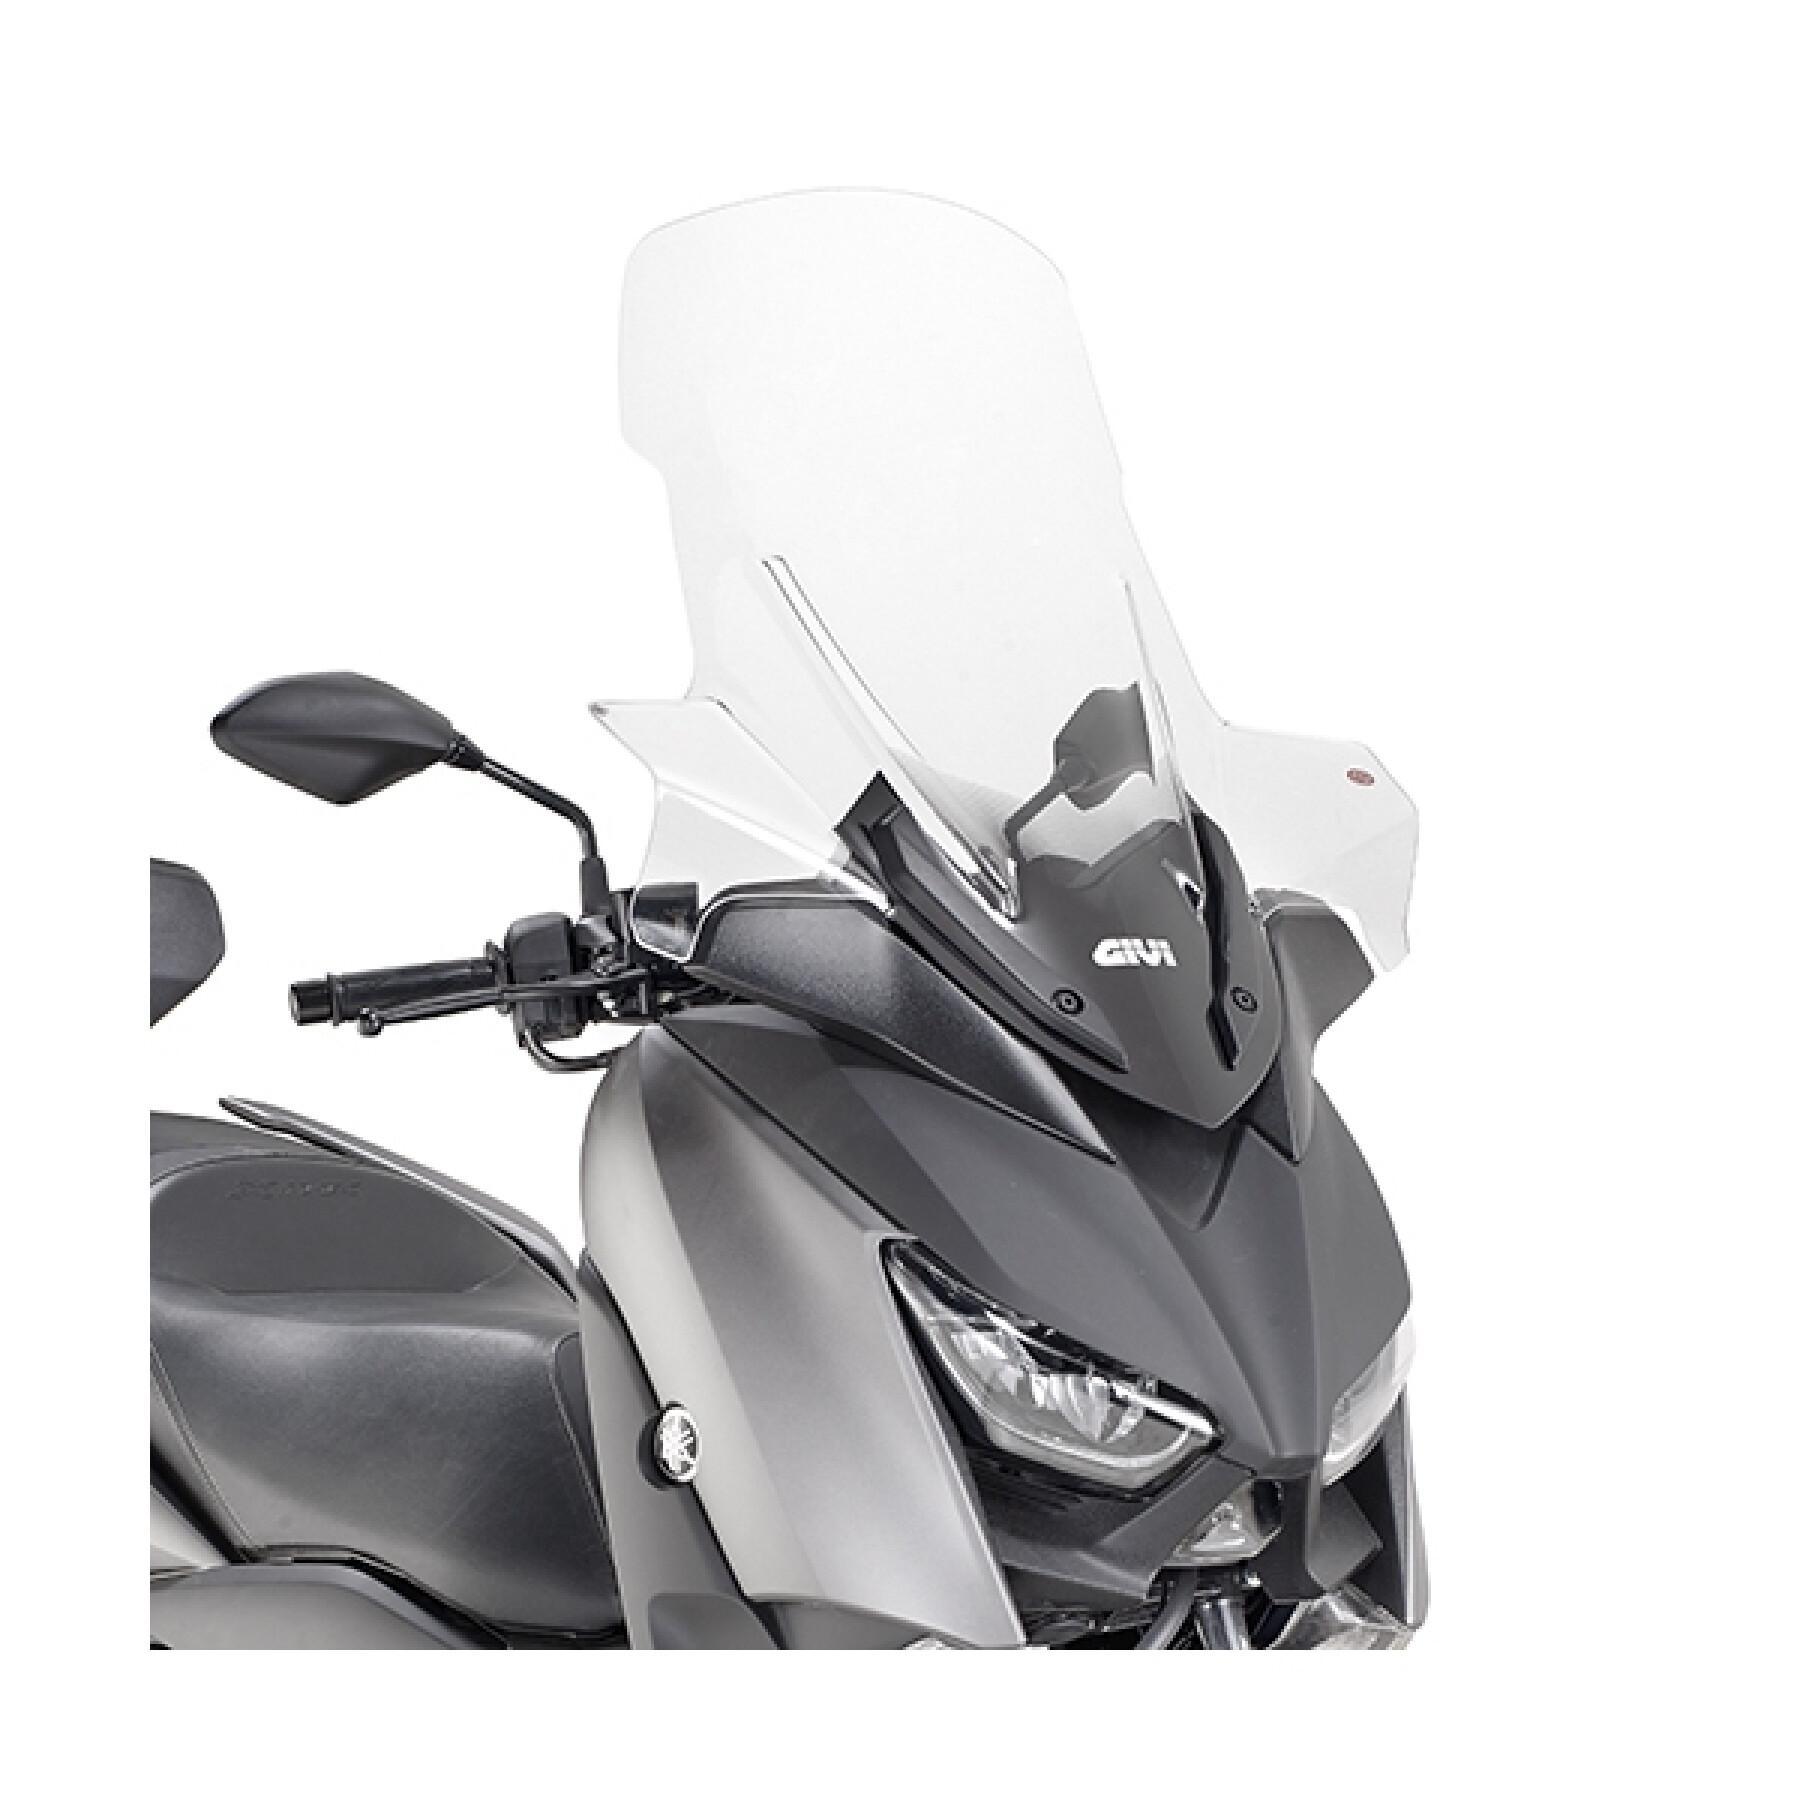 Vindruta för skoter Givi Yamaha X-Max 125 (2018 à 2019) / 300 (2017 à 2019) / 400 (2018 à 2019)